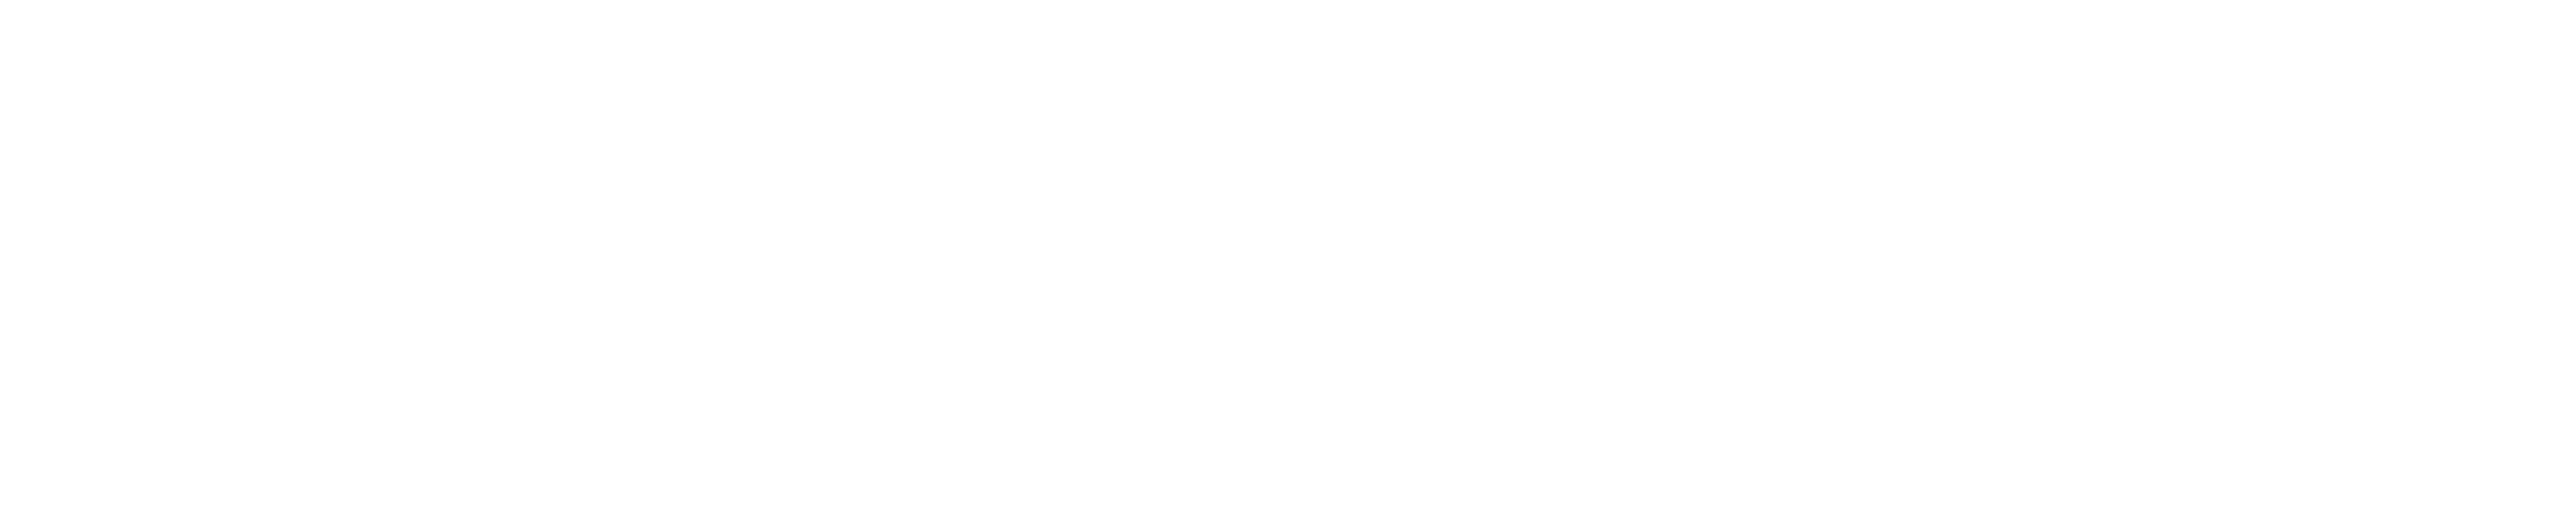 埃塞俄比亚货物的标志